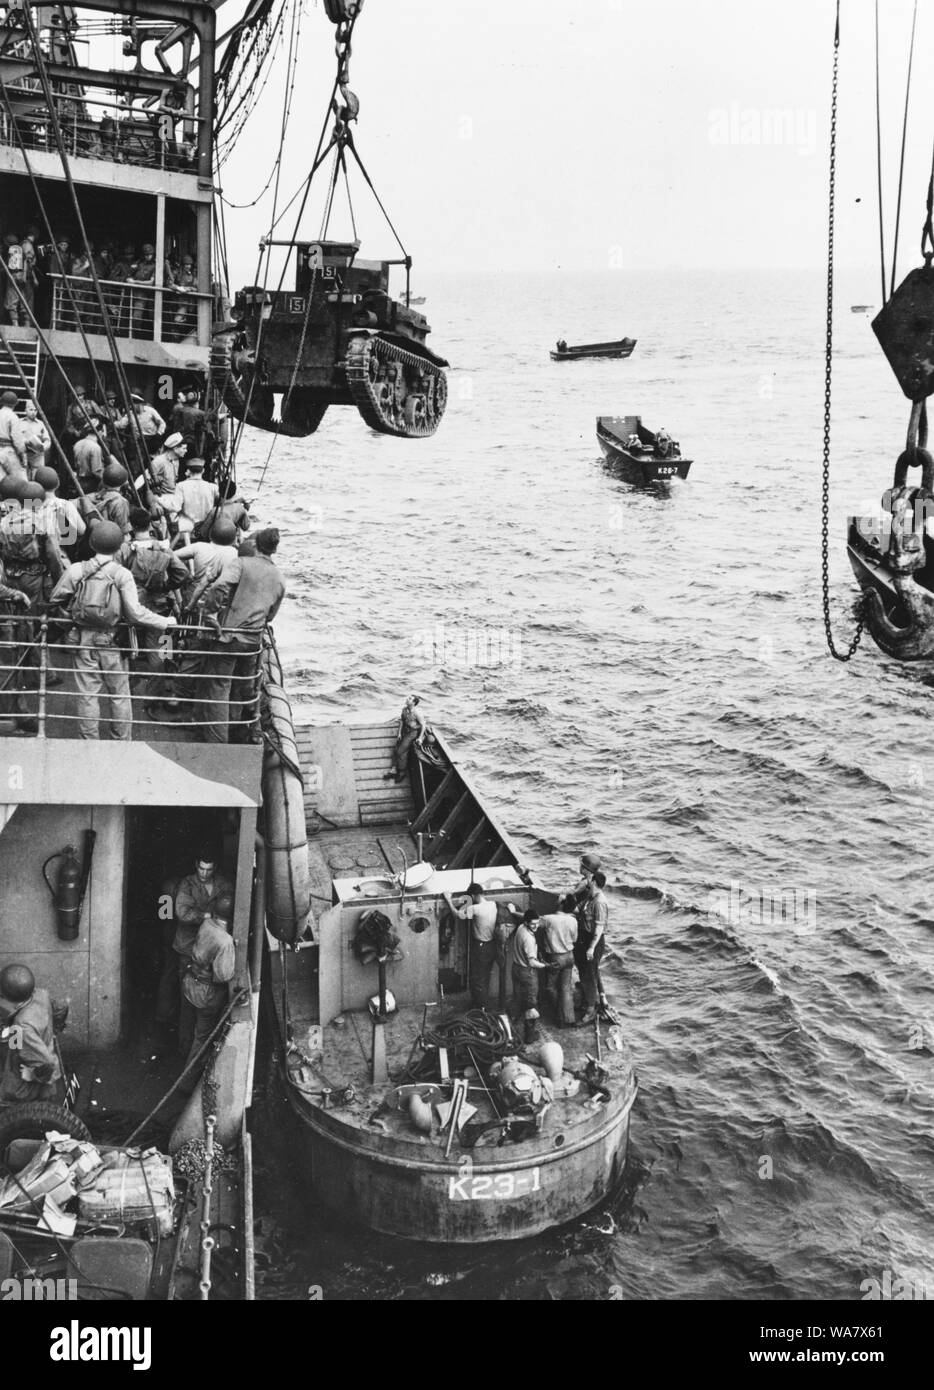 Guadalcanal-Tulagi les débarquements, 7-9 août 1942. Un Corps des Marines américains M2A4 Stuart light tank est levé, de l'USS Alchiba (AK-23) dans un LCM(2) des engins de débarquement, au large de l'invasion de Guadalcanal plages sur la première journée des débarquements, il y a 7 août 1942. Banque D'Images